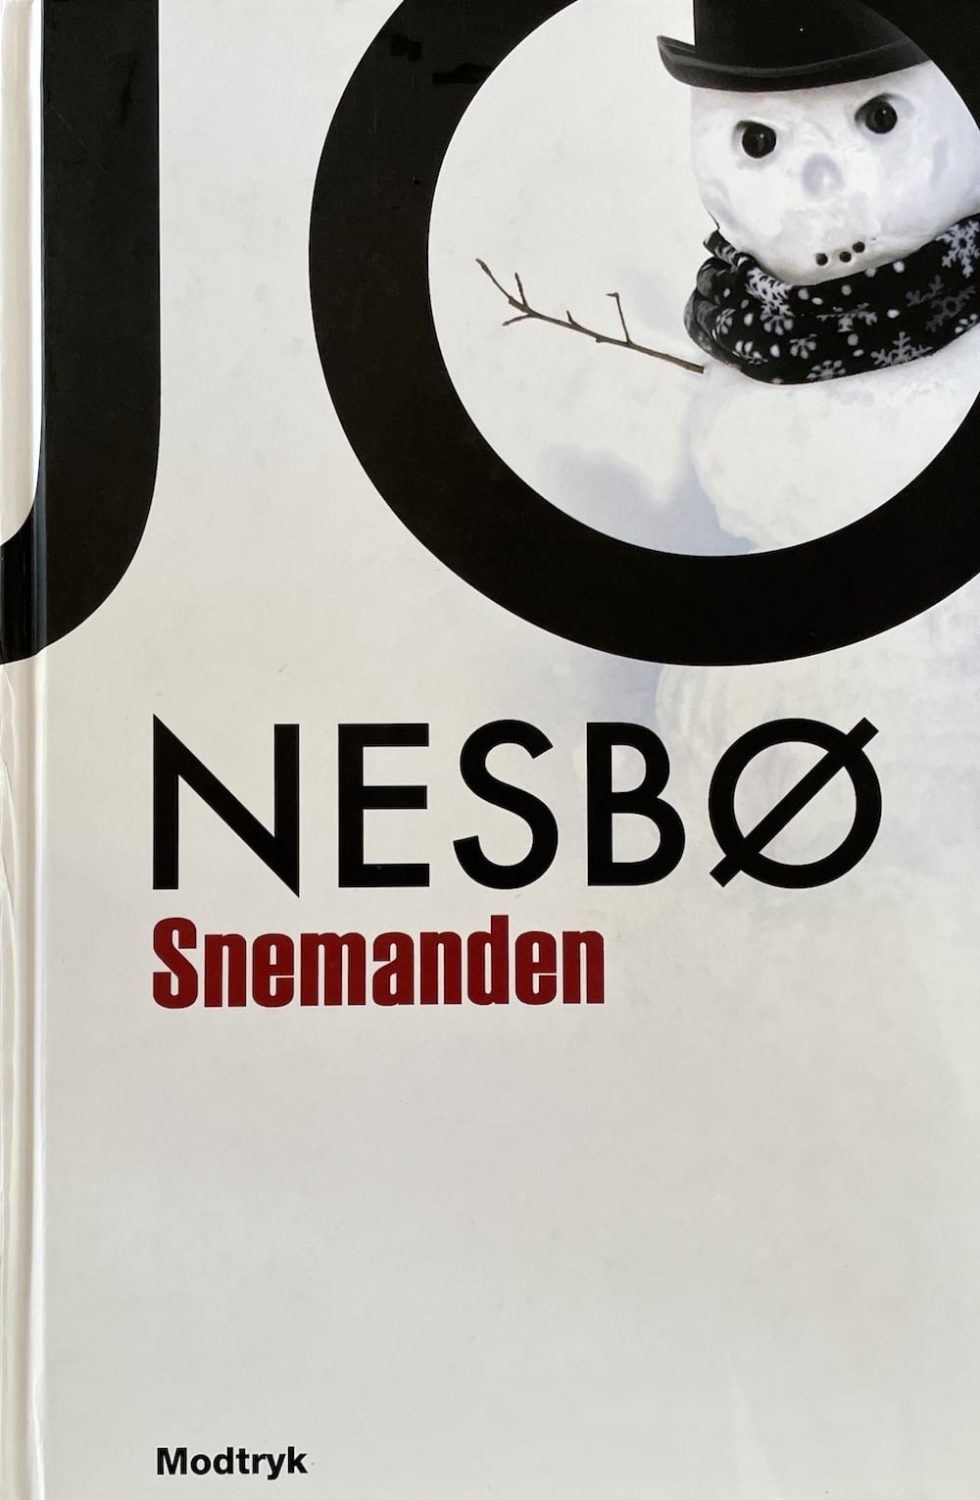 Snemanden, Nesbø, brugt bog